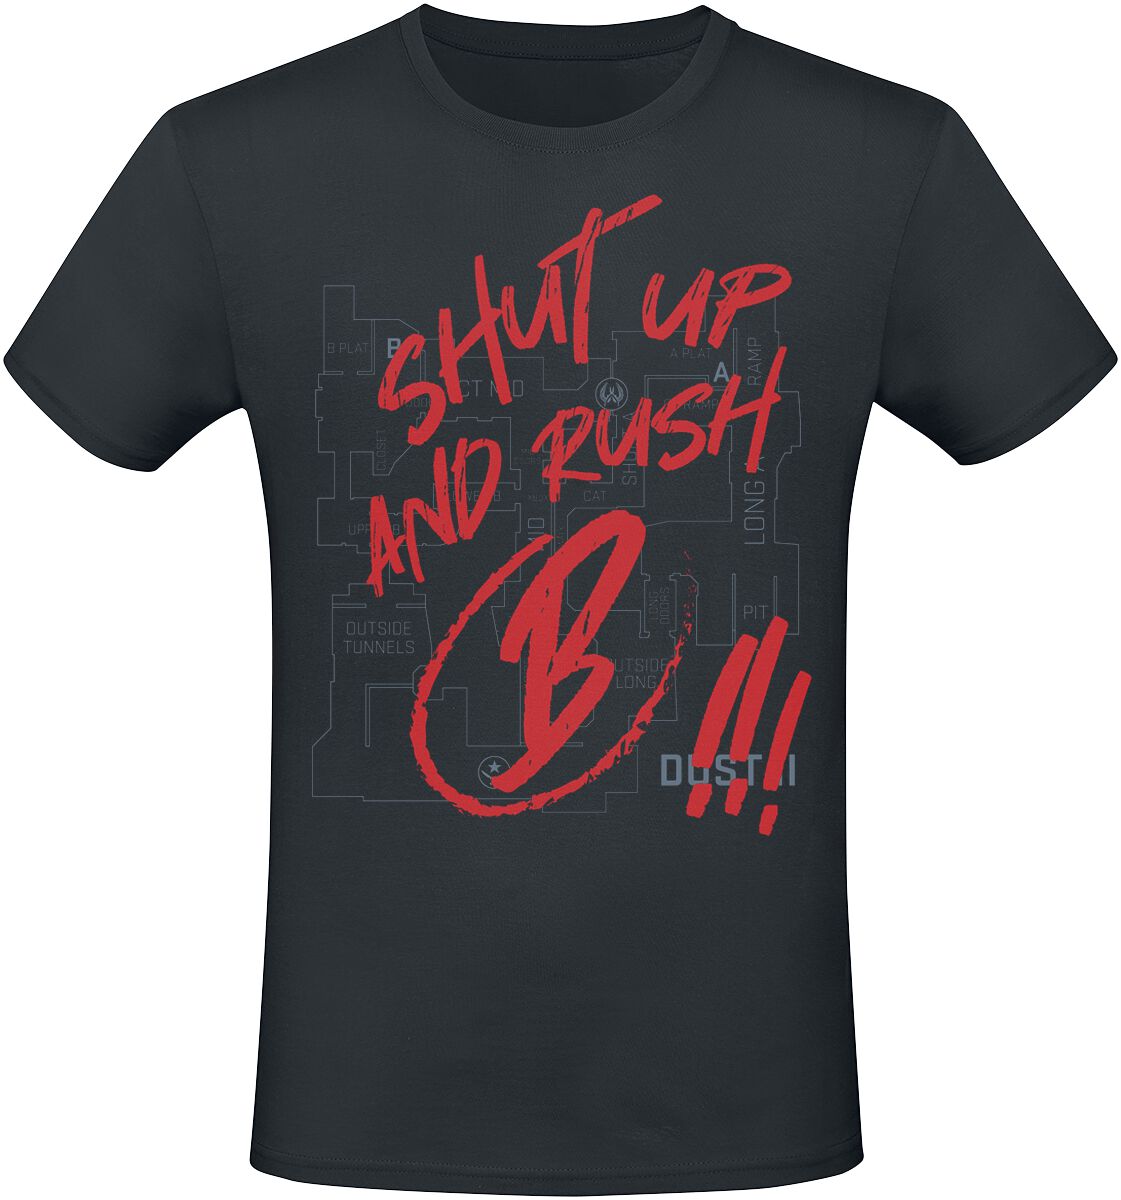 Counter-Strike - Gaming T-Shirt - 2 - Shut Up And Rush B !!! - S bis XXL - für Männer - Größe XXL - schwarz  - EMP exklusives Merchandise!